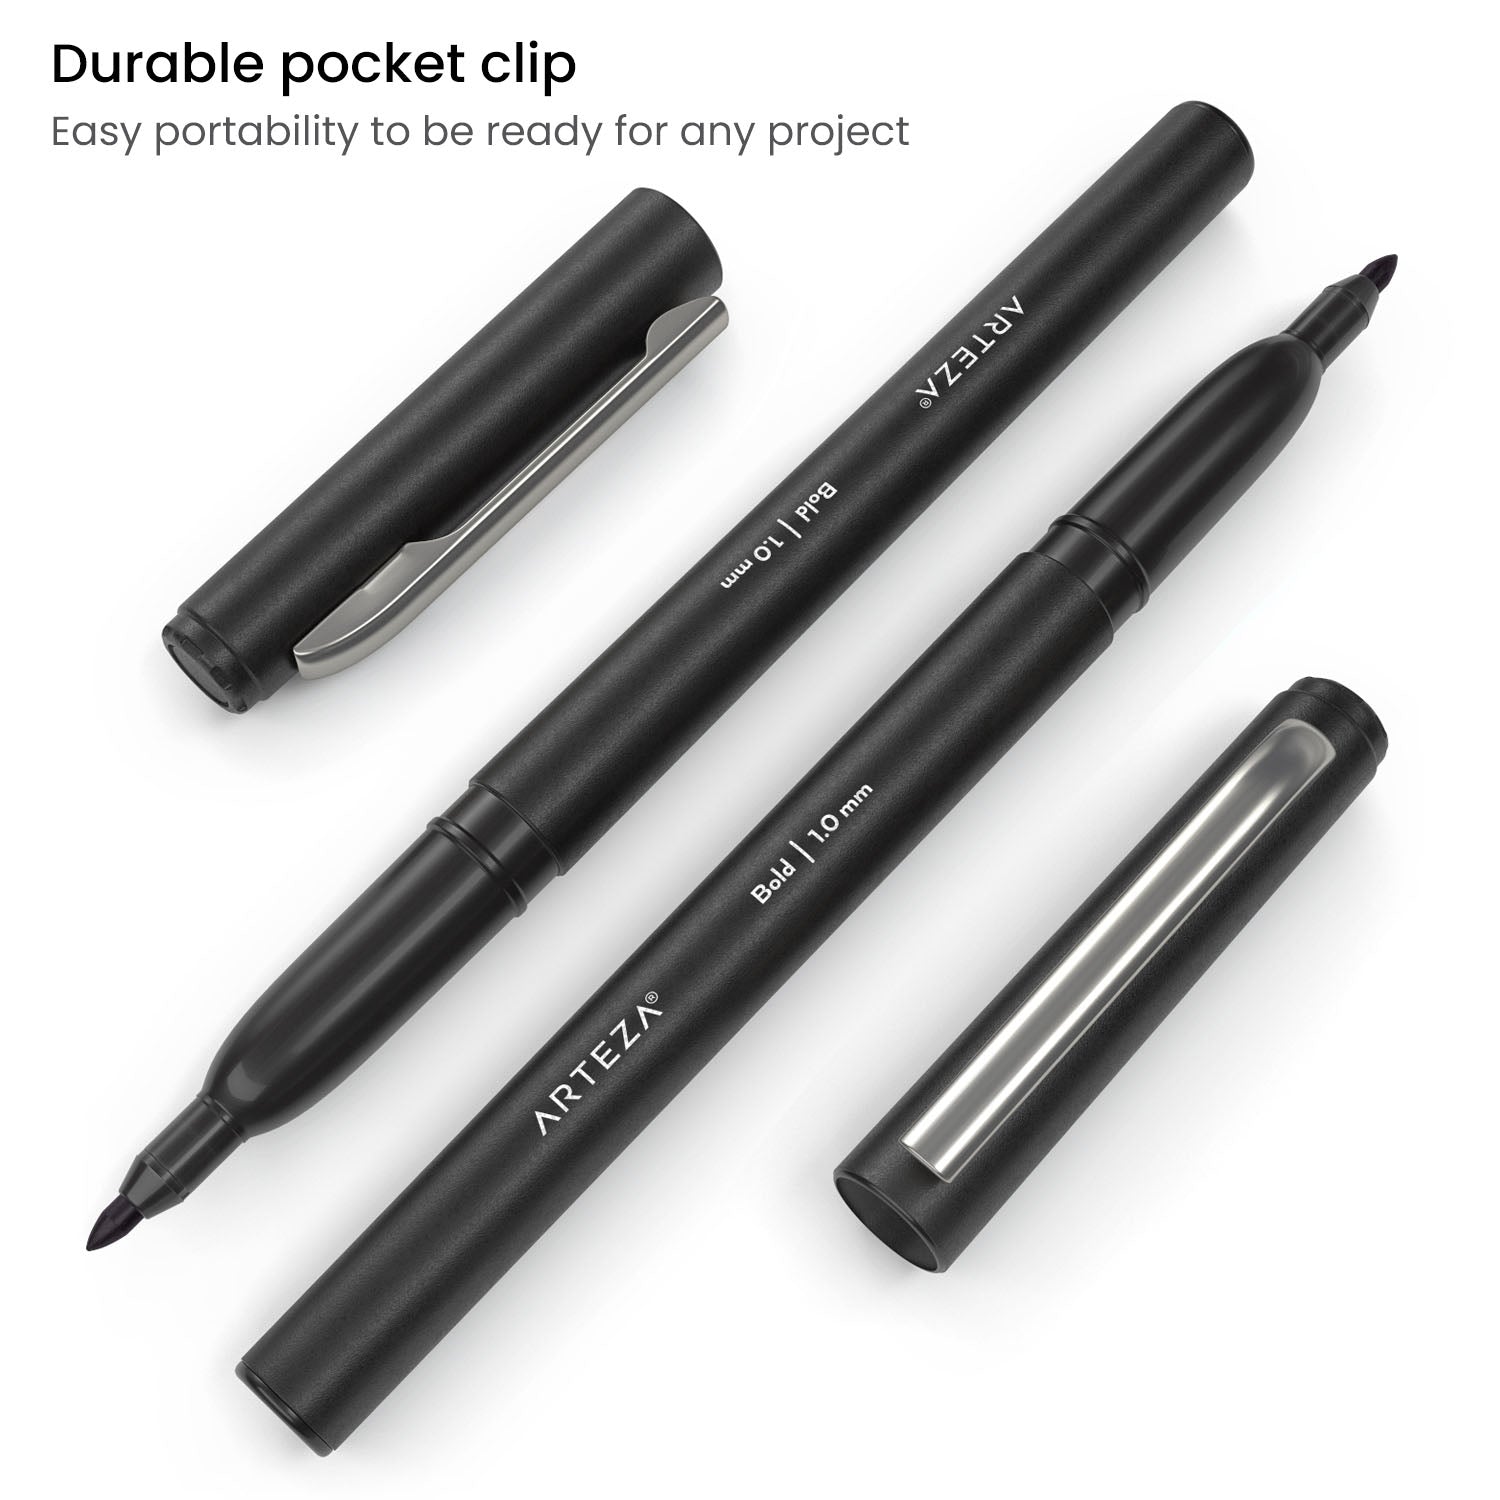 https://arteza.com/cdn/shop/products/classic-felt-pens-black-fiber-tip-set-of-12_JhWr7Hvj.jpg?v=1652894149&width=1946